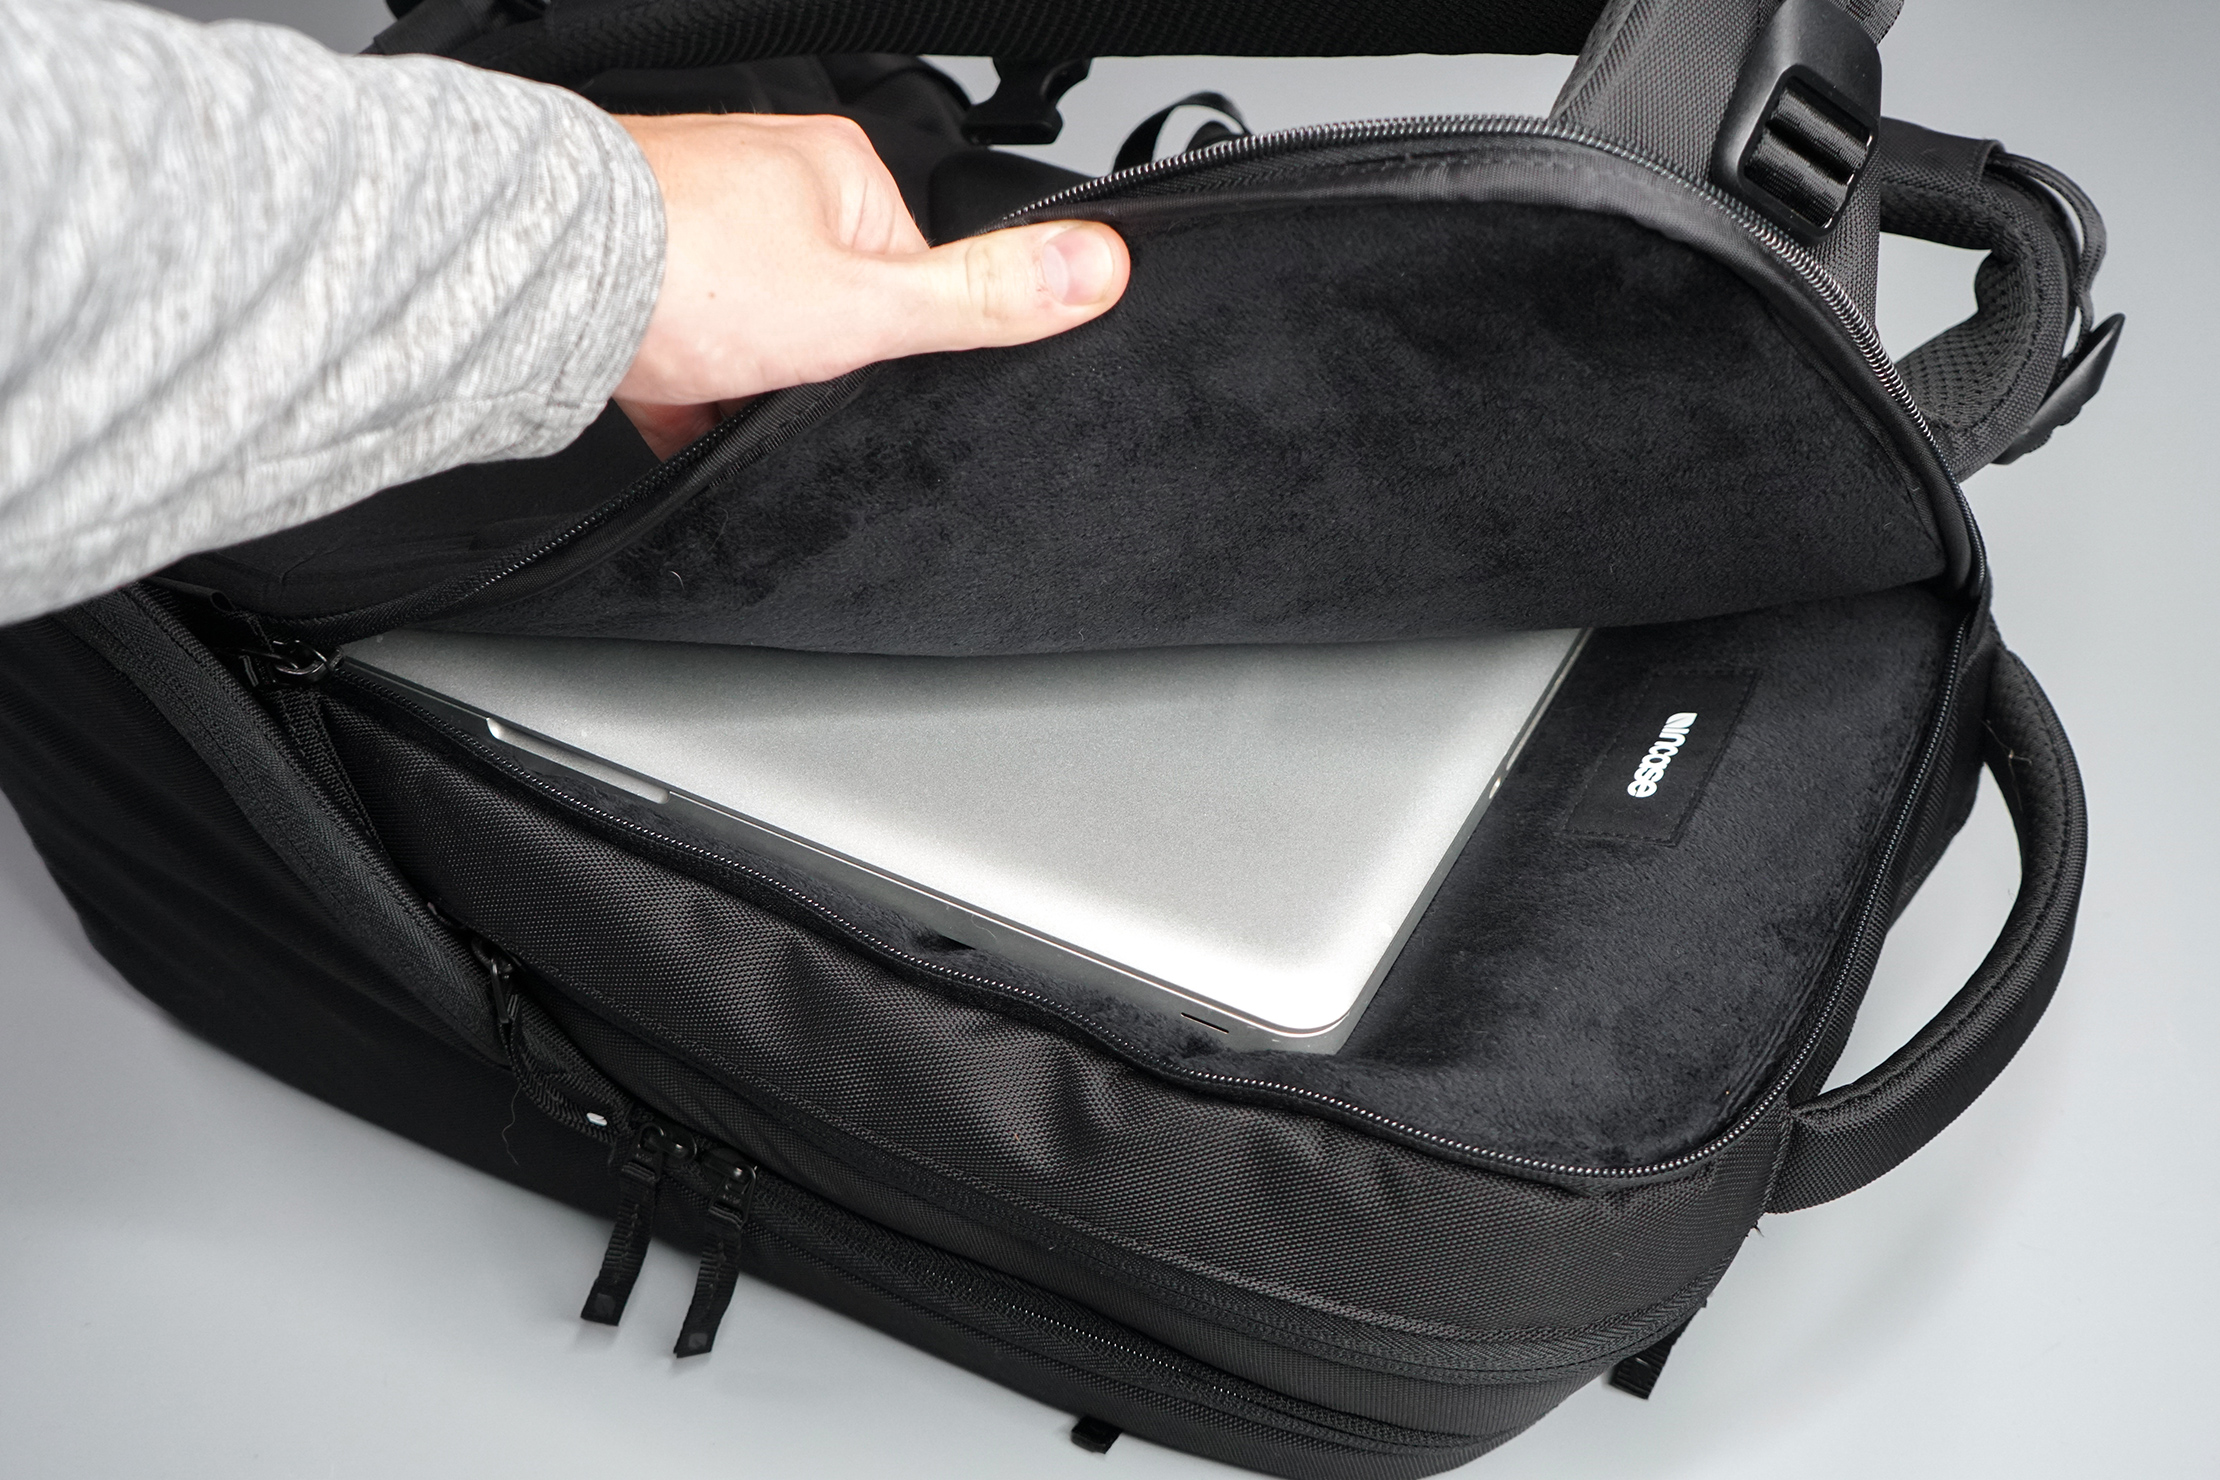 Domestic Cat Laptop Bag Briefcase Shoulder Messenger Bag Water Repellent Laptop Bag Satchel Tablet Bussiness Carrying Handbag Laptop Sleeve for Women and Men 